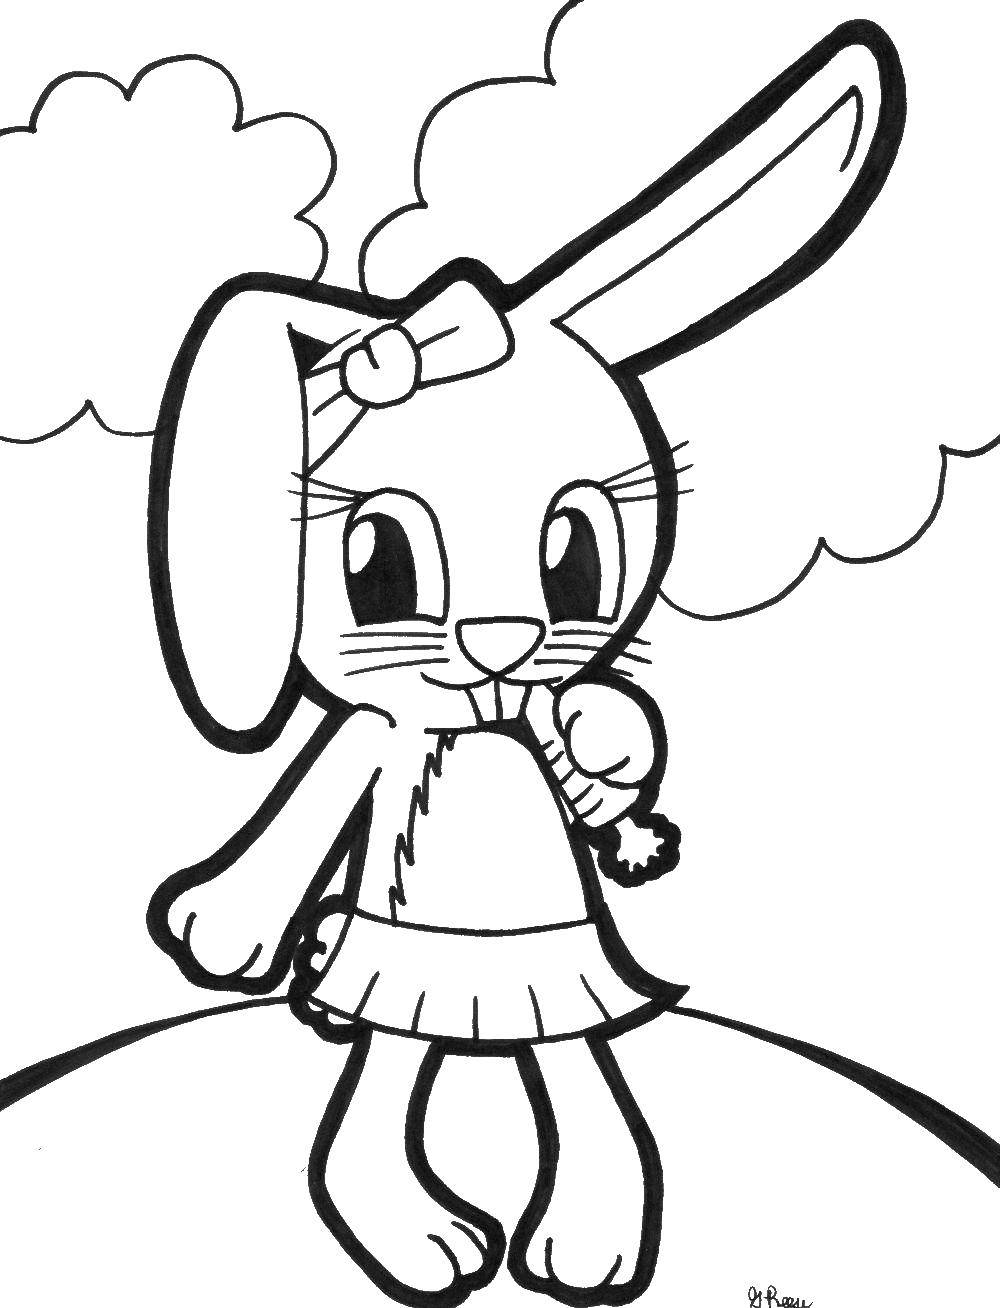 Опис: розмальовки  Кролик їсть моркву. Категорія: кролик. Теги:  кролик, моркву.